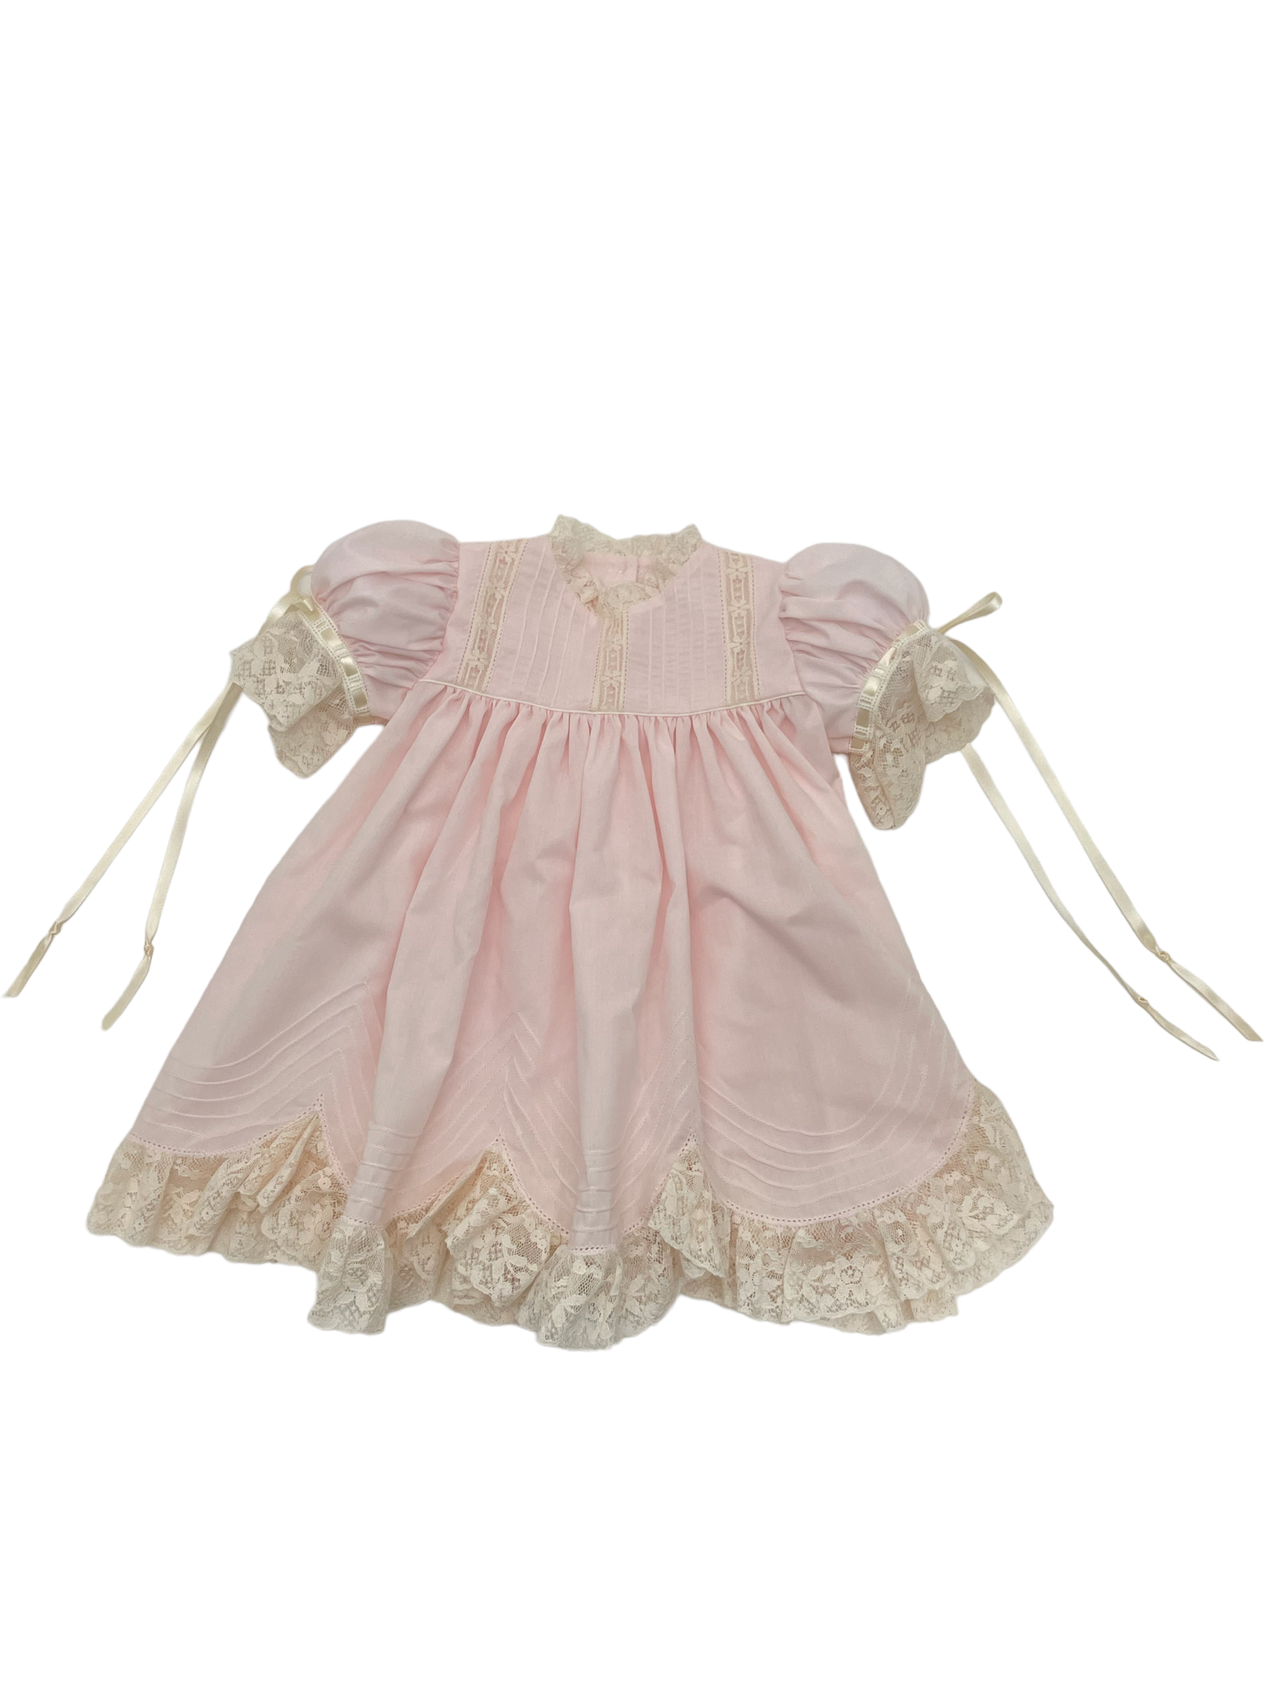 Treasured Memories Pink Dress W/Ecru Lace & Ecru Ribbon Scallop Lace Hem S2844 5003